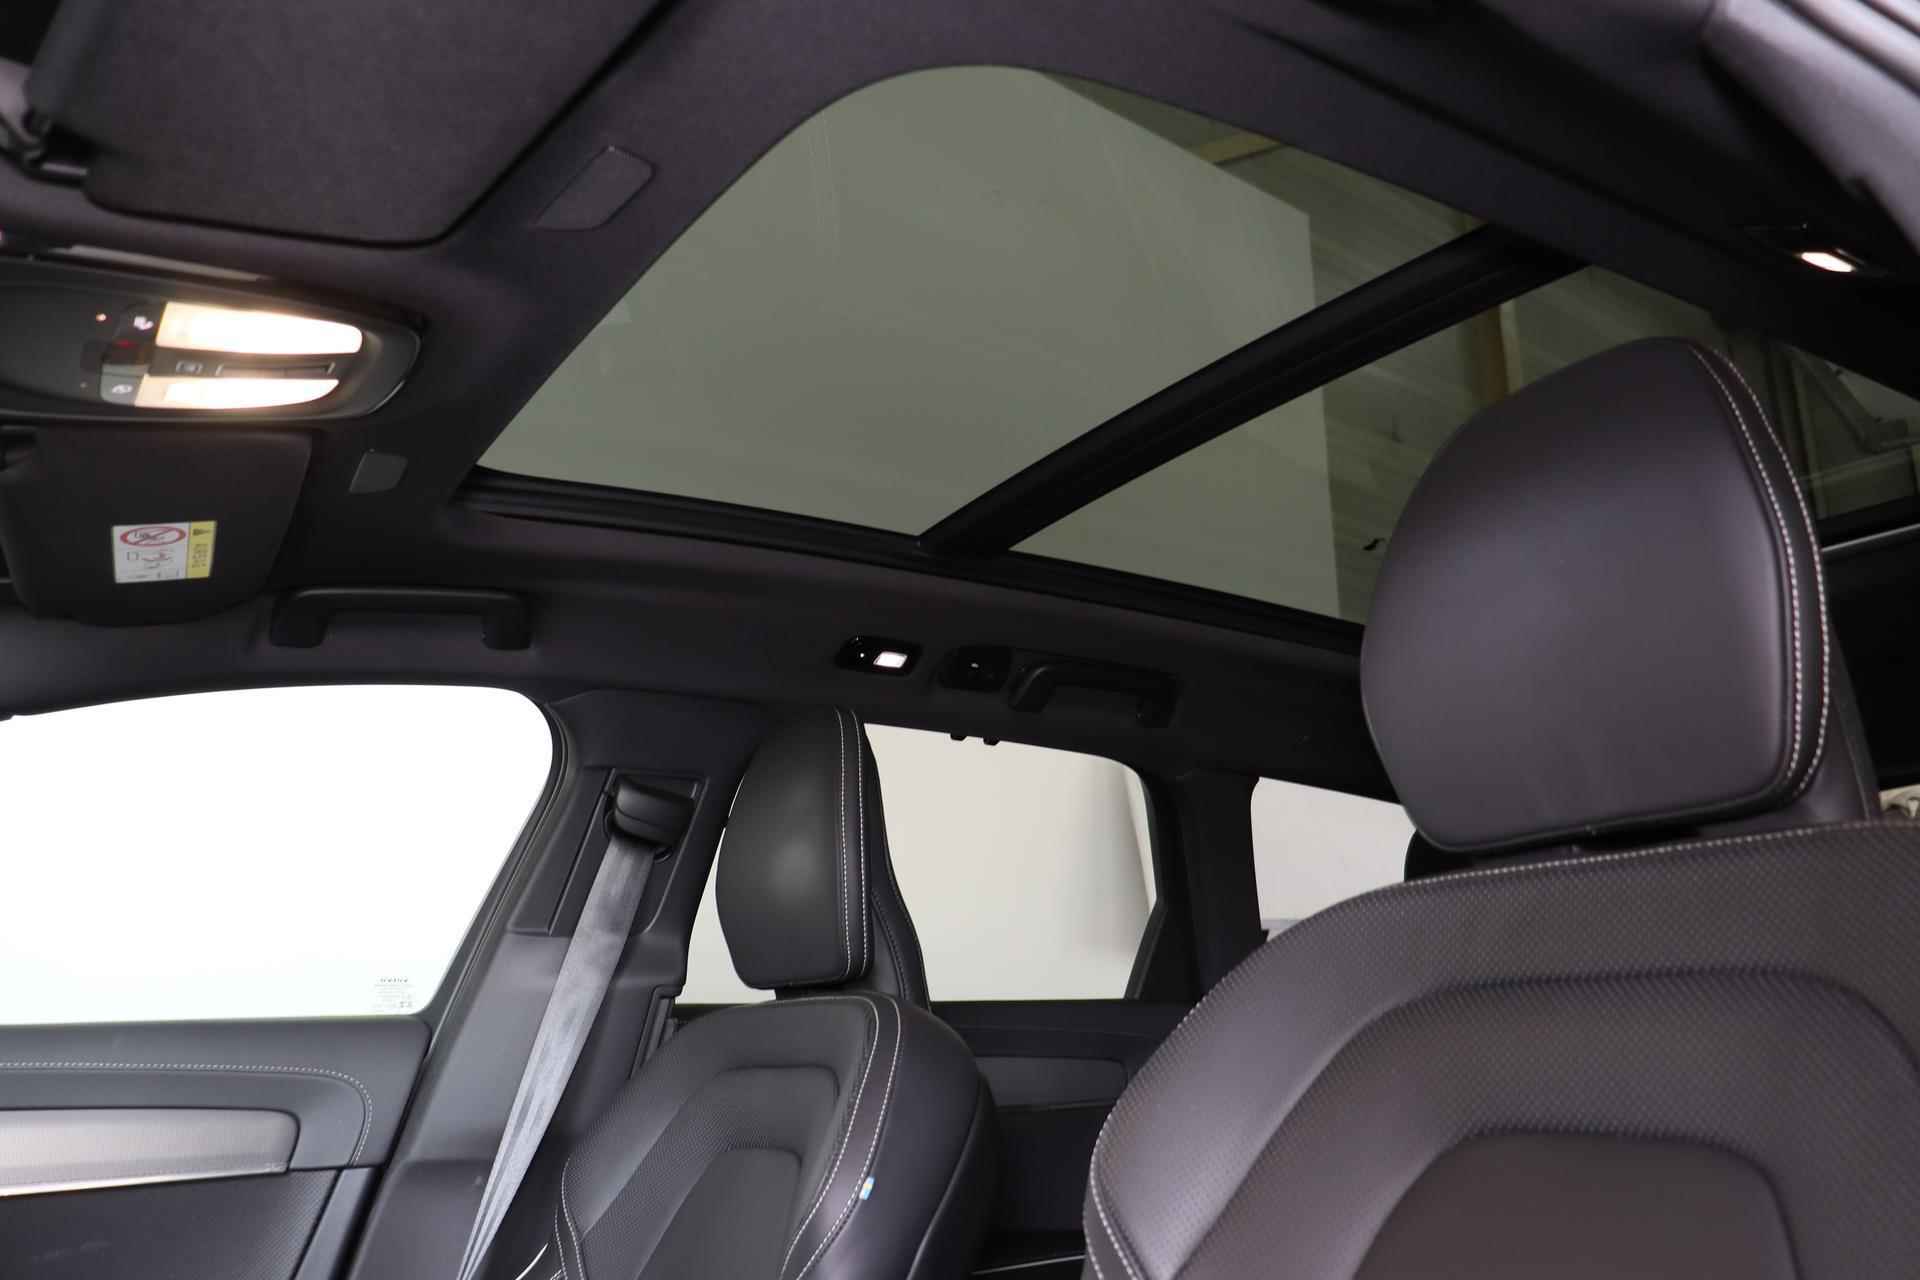 Volvo V90 T6 Recharge AWD Ultimate Bright - 360º camera - Adaptive Cruise Control - Pilot Assist - BLIS dodehoekassistentie - Harman Kardon premium audio - Elektr. verstelbare voorstoelen met geheugen - Stoelverwarming voor & achter - Verwarmbaar stuur - Zongordijnen geïntegreerd in achterportieren - LED-koplampen met grootlichtassistent - Keyless drive - Privacy Glas - 6/26